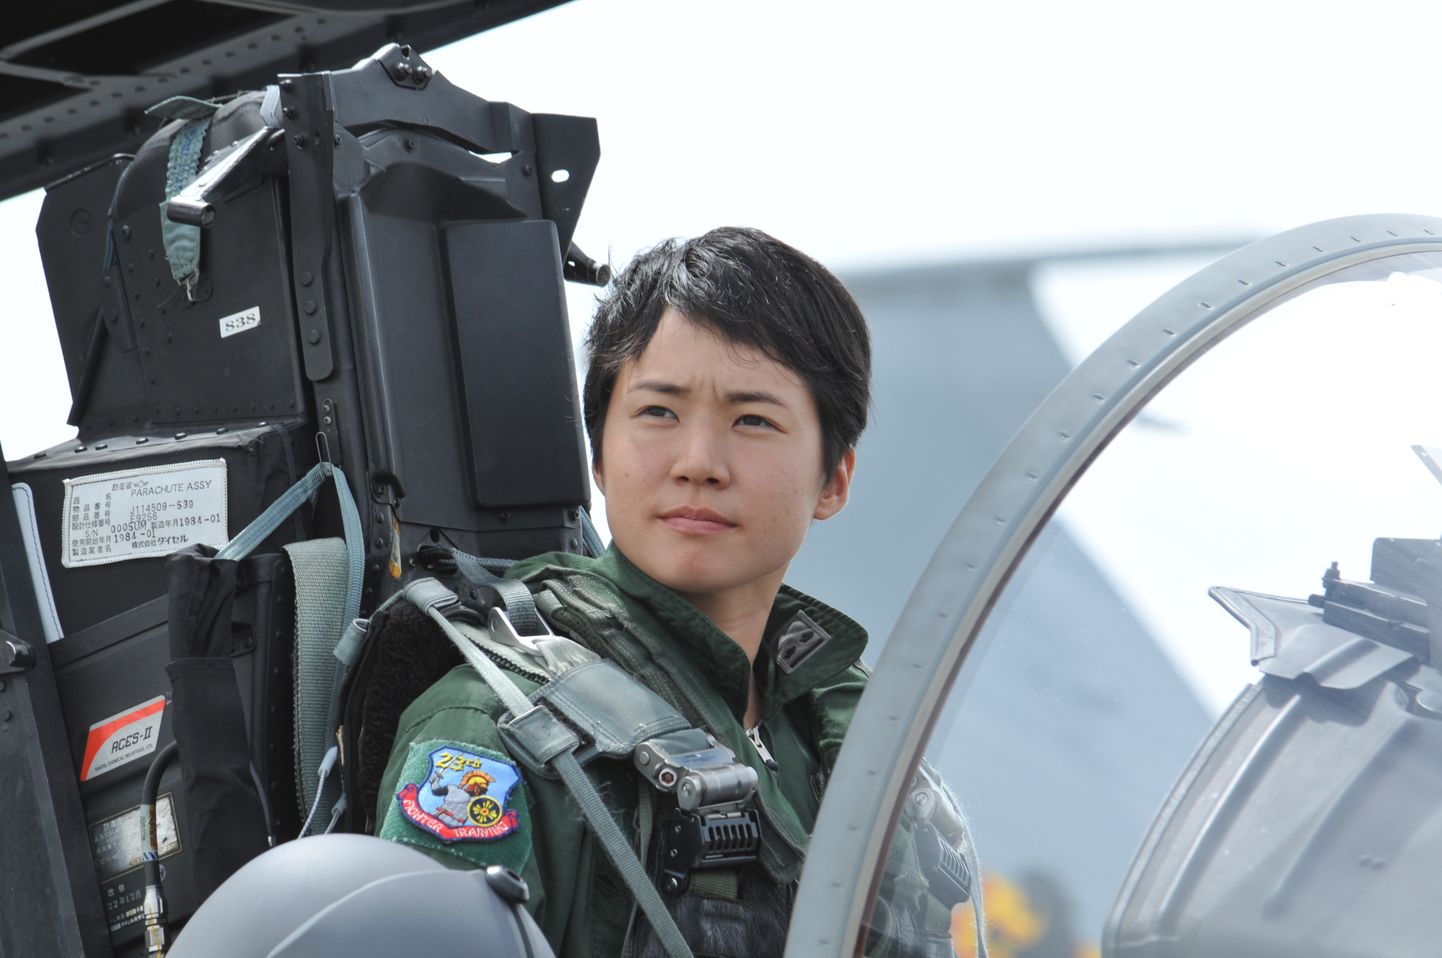 Jaapani esimene naissoost hävitajapiloot leitnant Misa Matsushima.